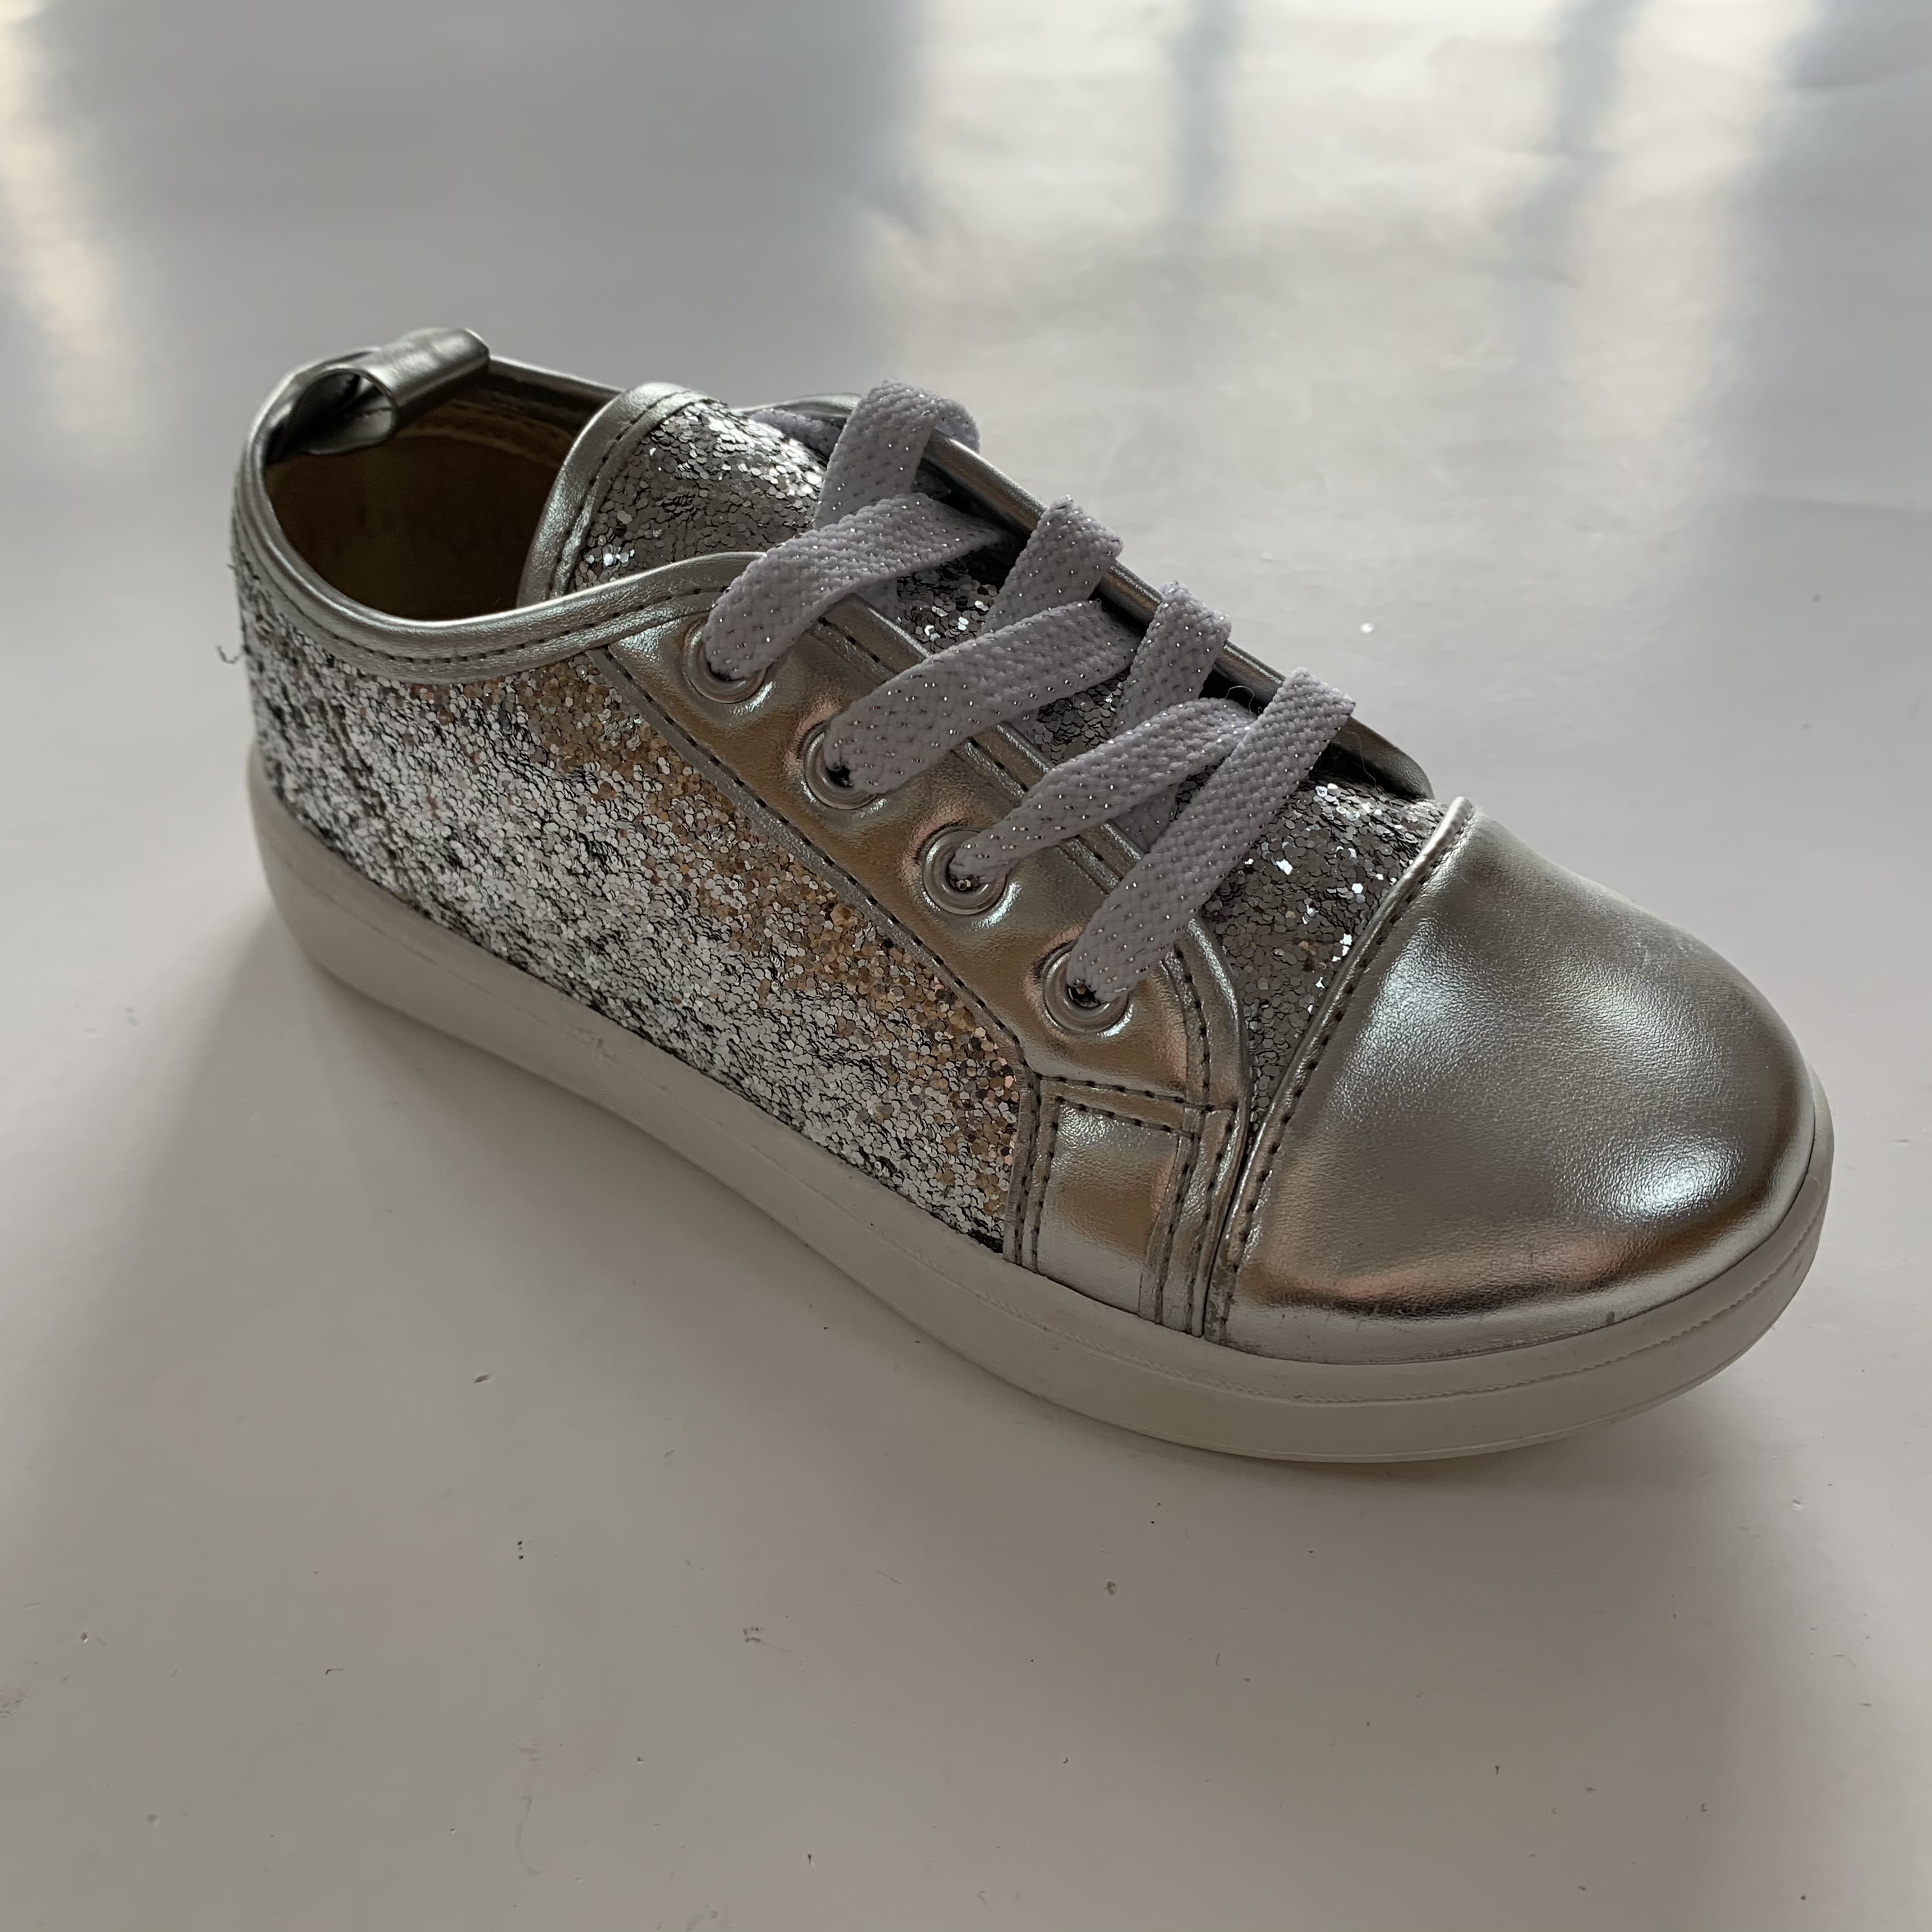 Children's Slip On Glitter Casual Shoes